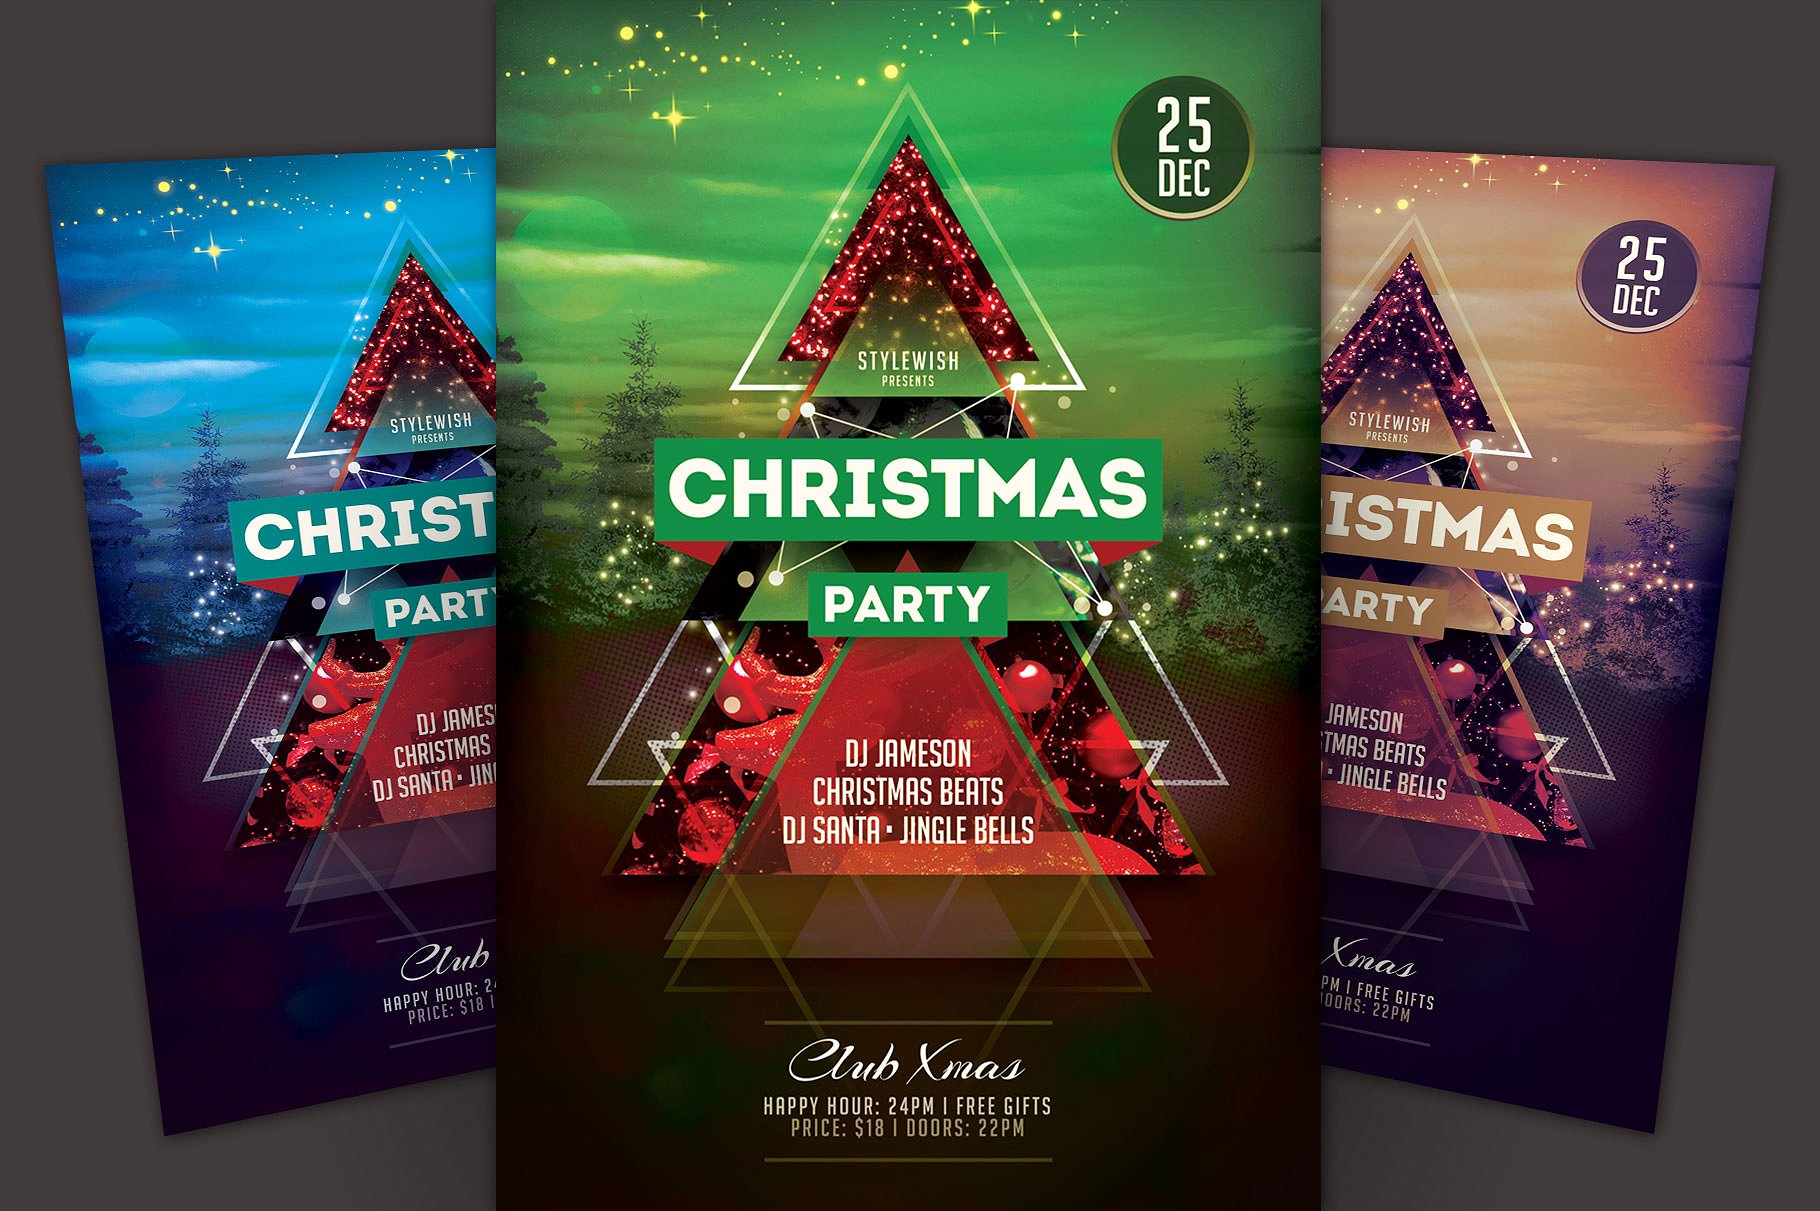 圣诞节节日活动宣传单设计模板 Christmas Party Flyer Template插图